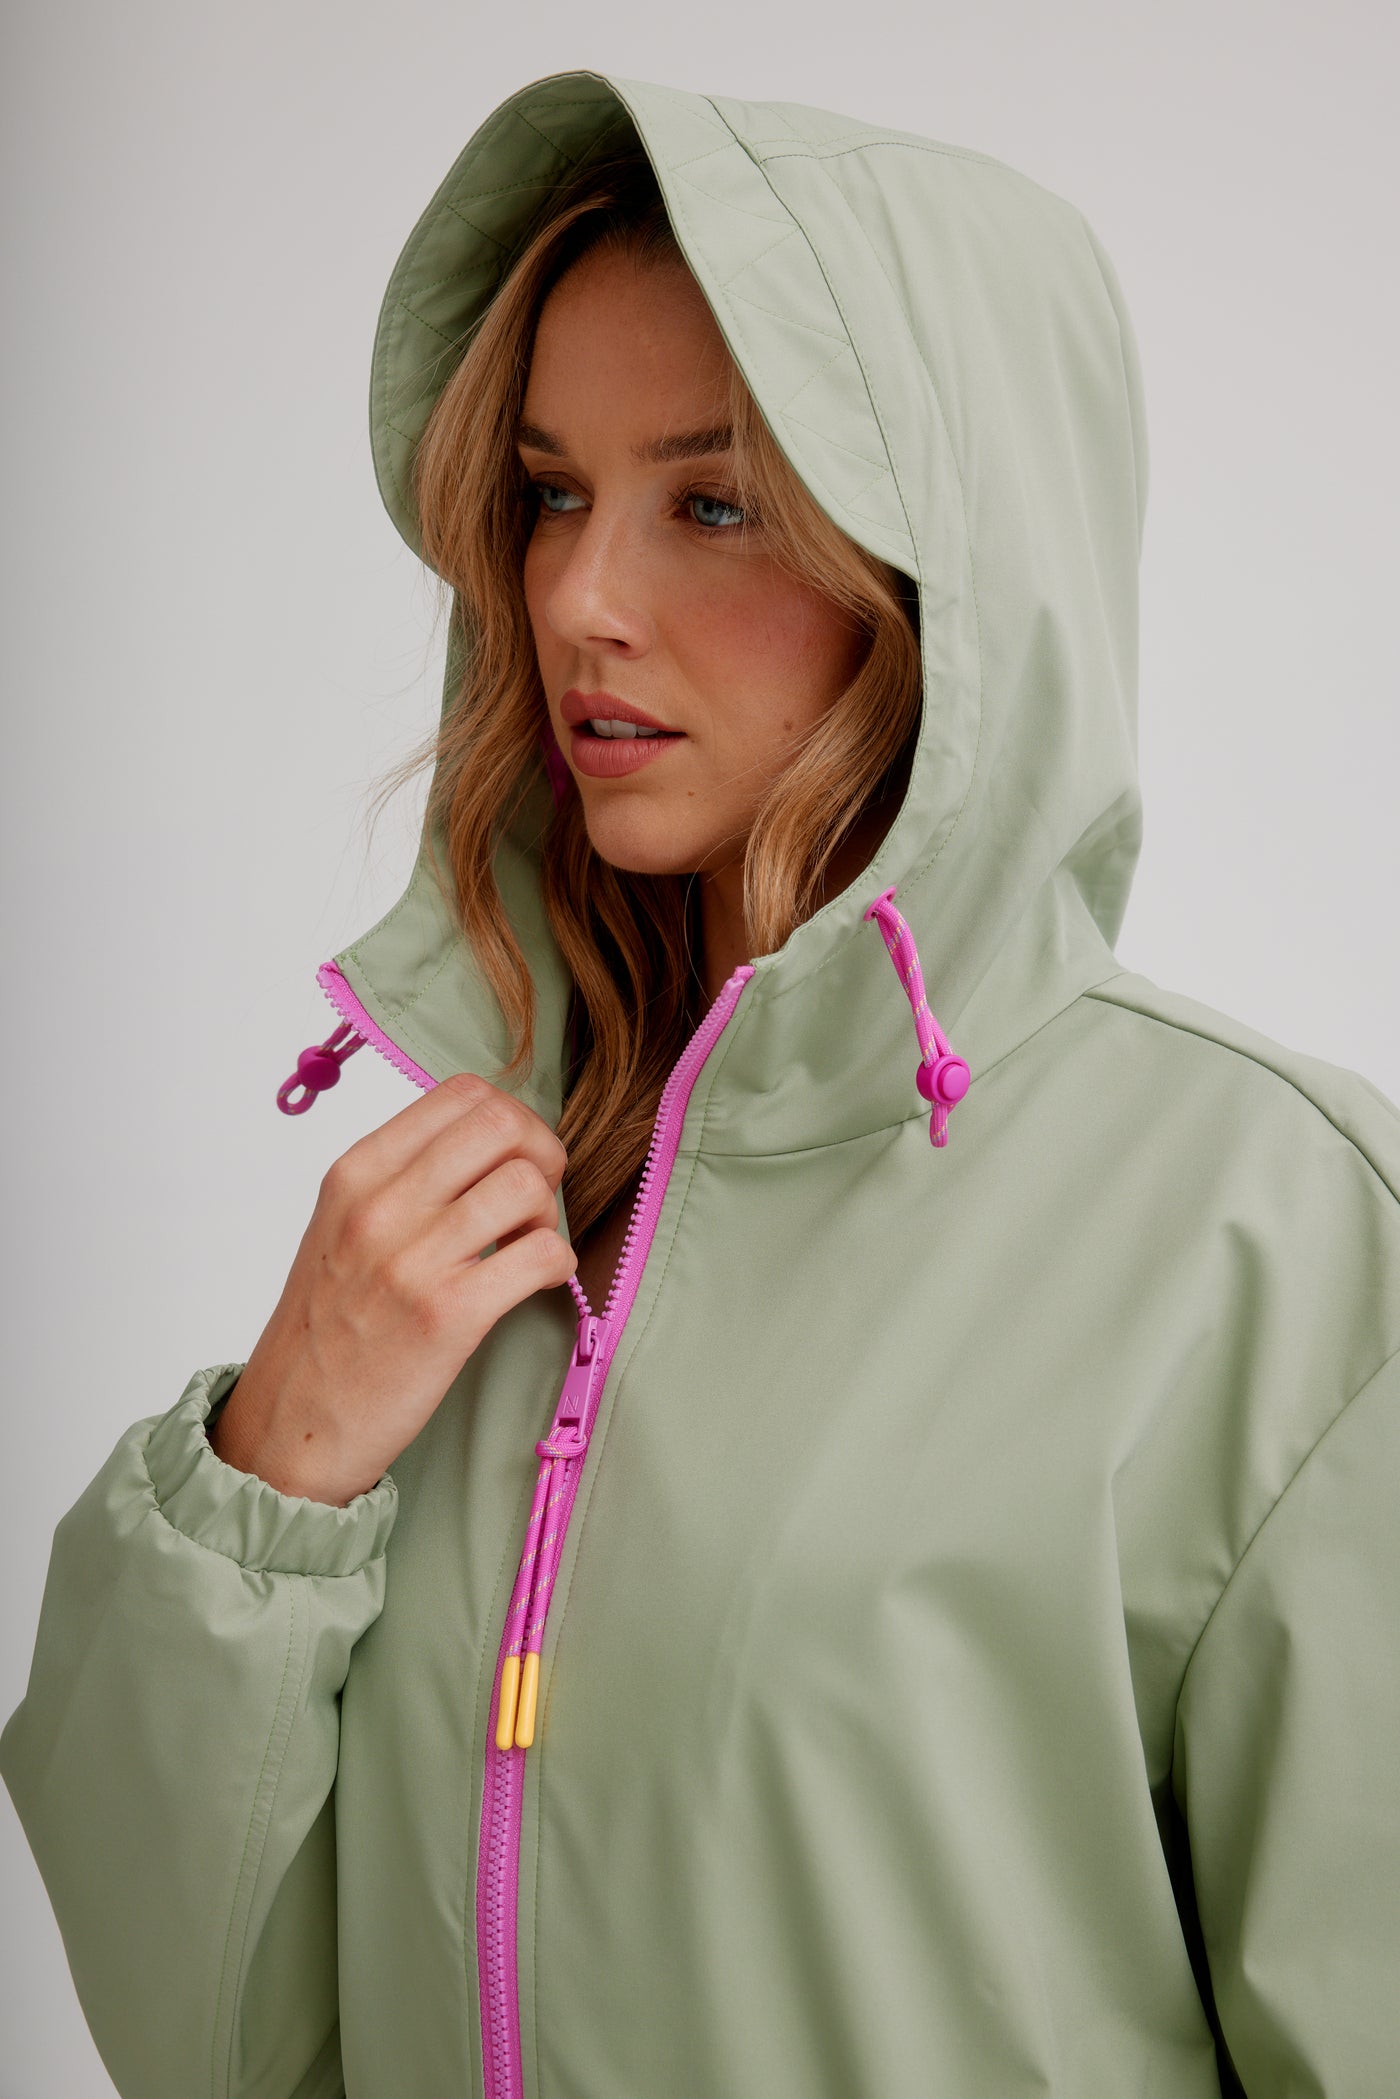 Nikki Jones Packable Anorak Raincoat W/ Contrast Trim 